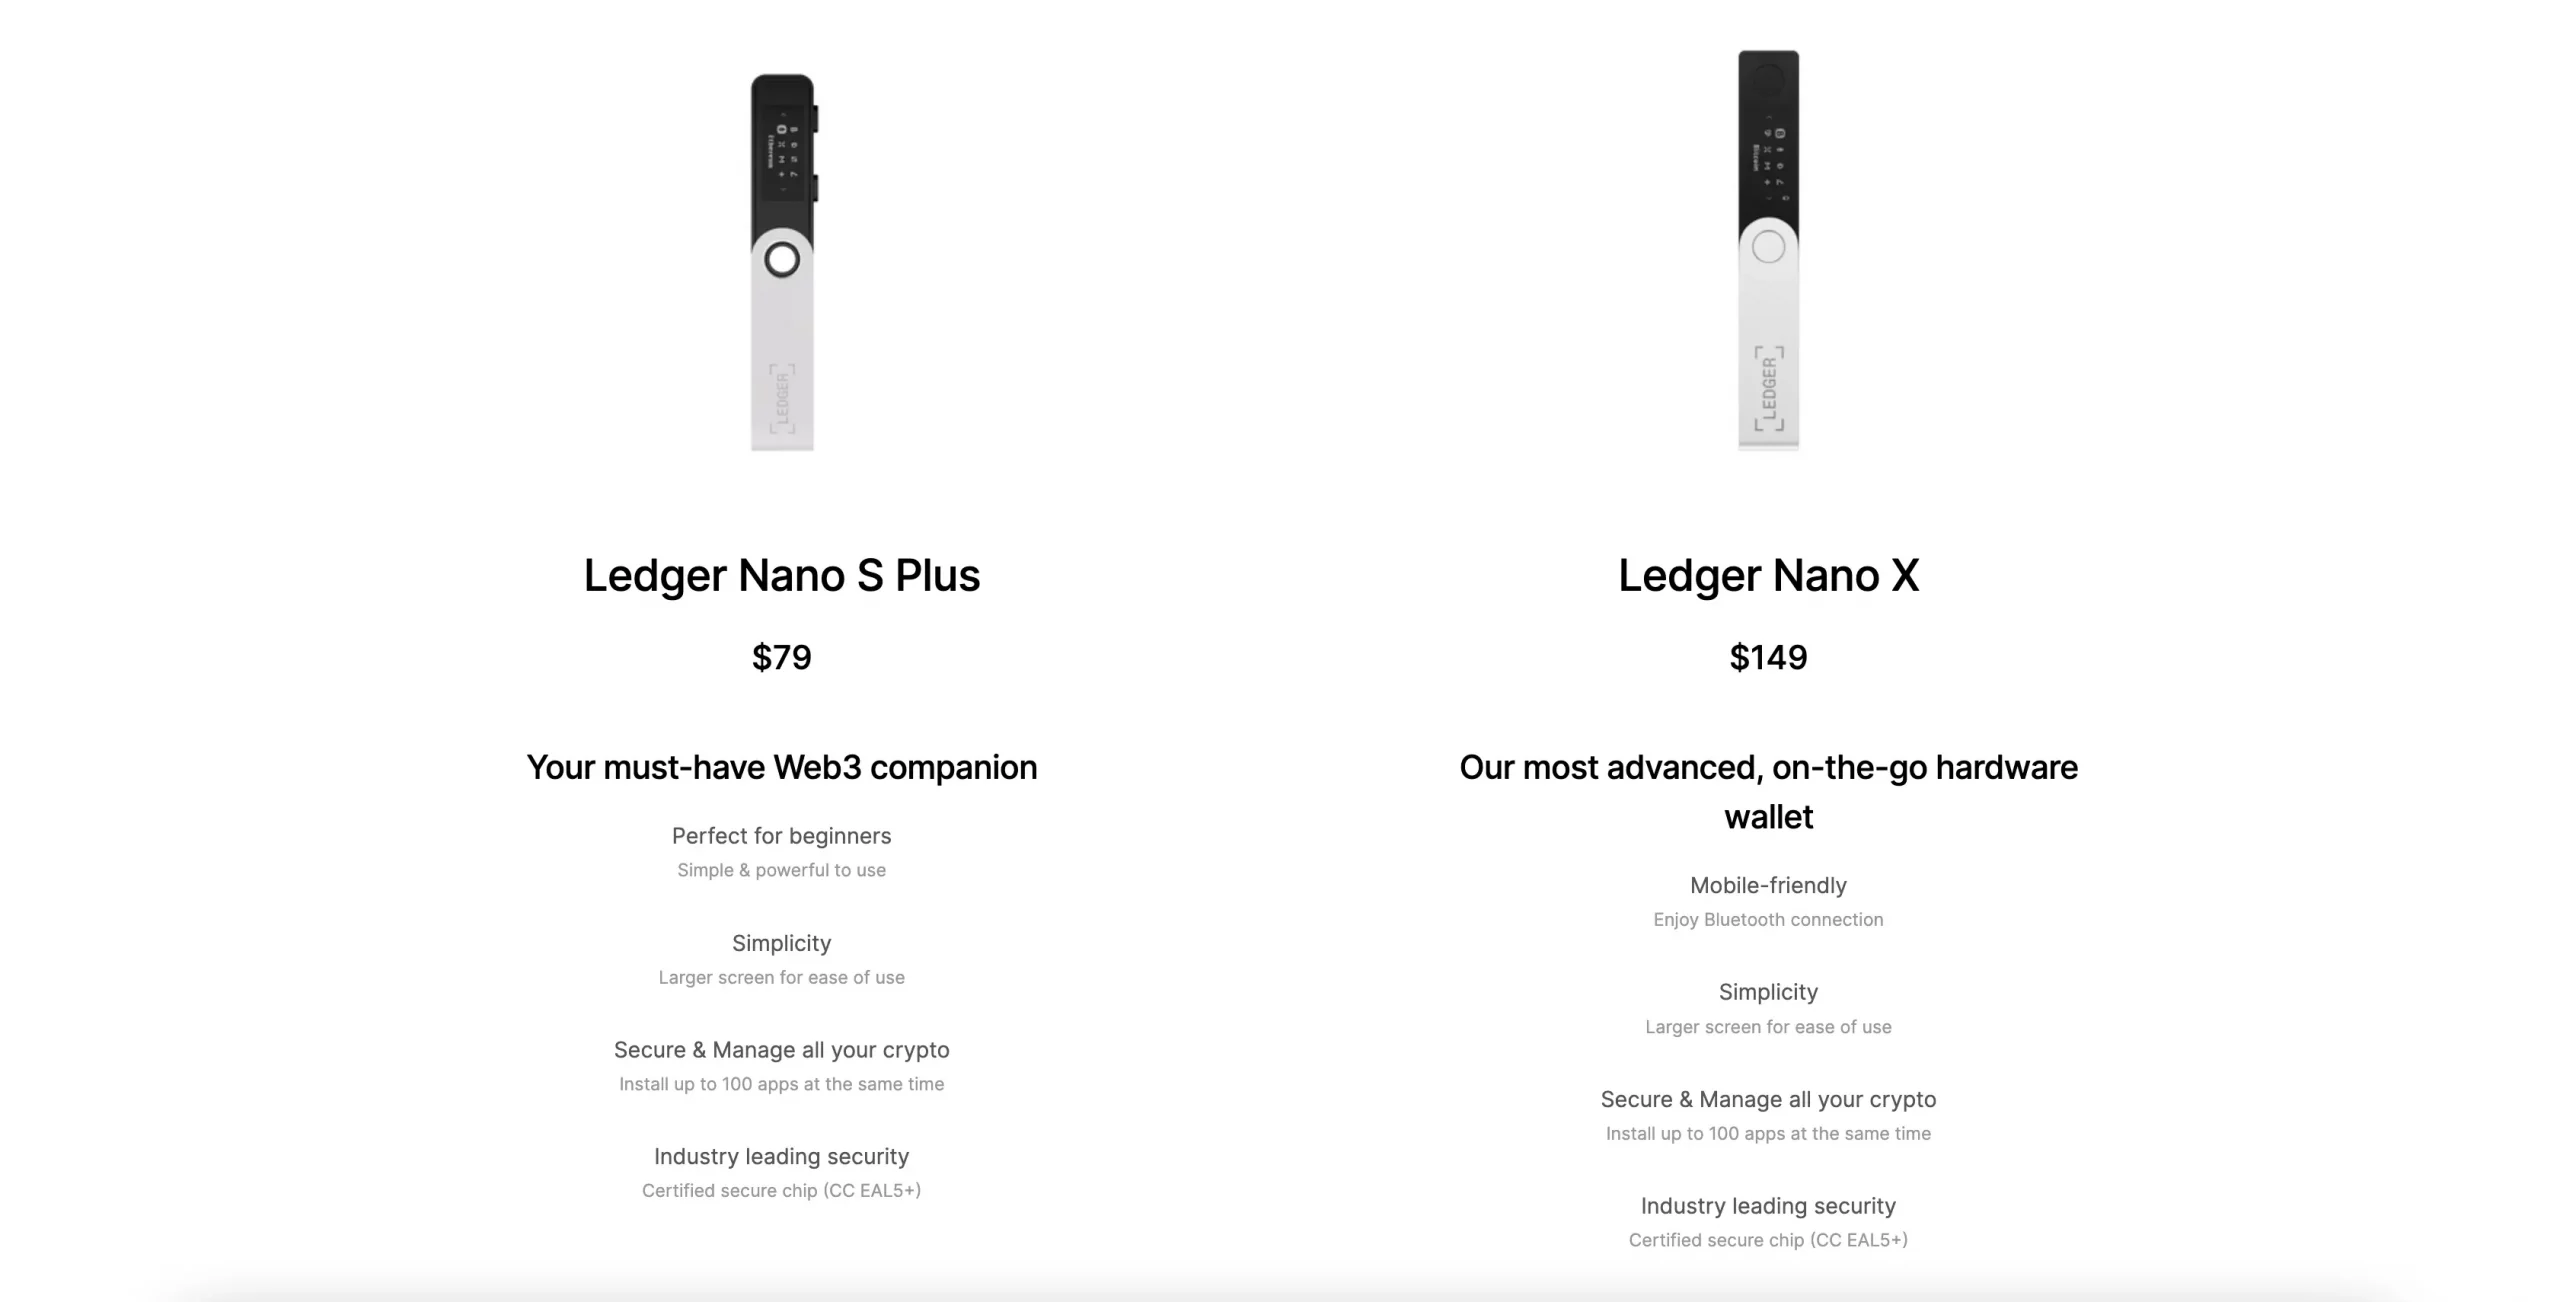 Ledger Nano X vs. Ledger Nano S Plus